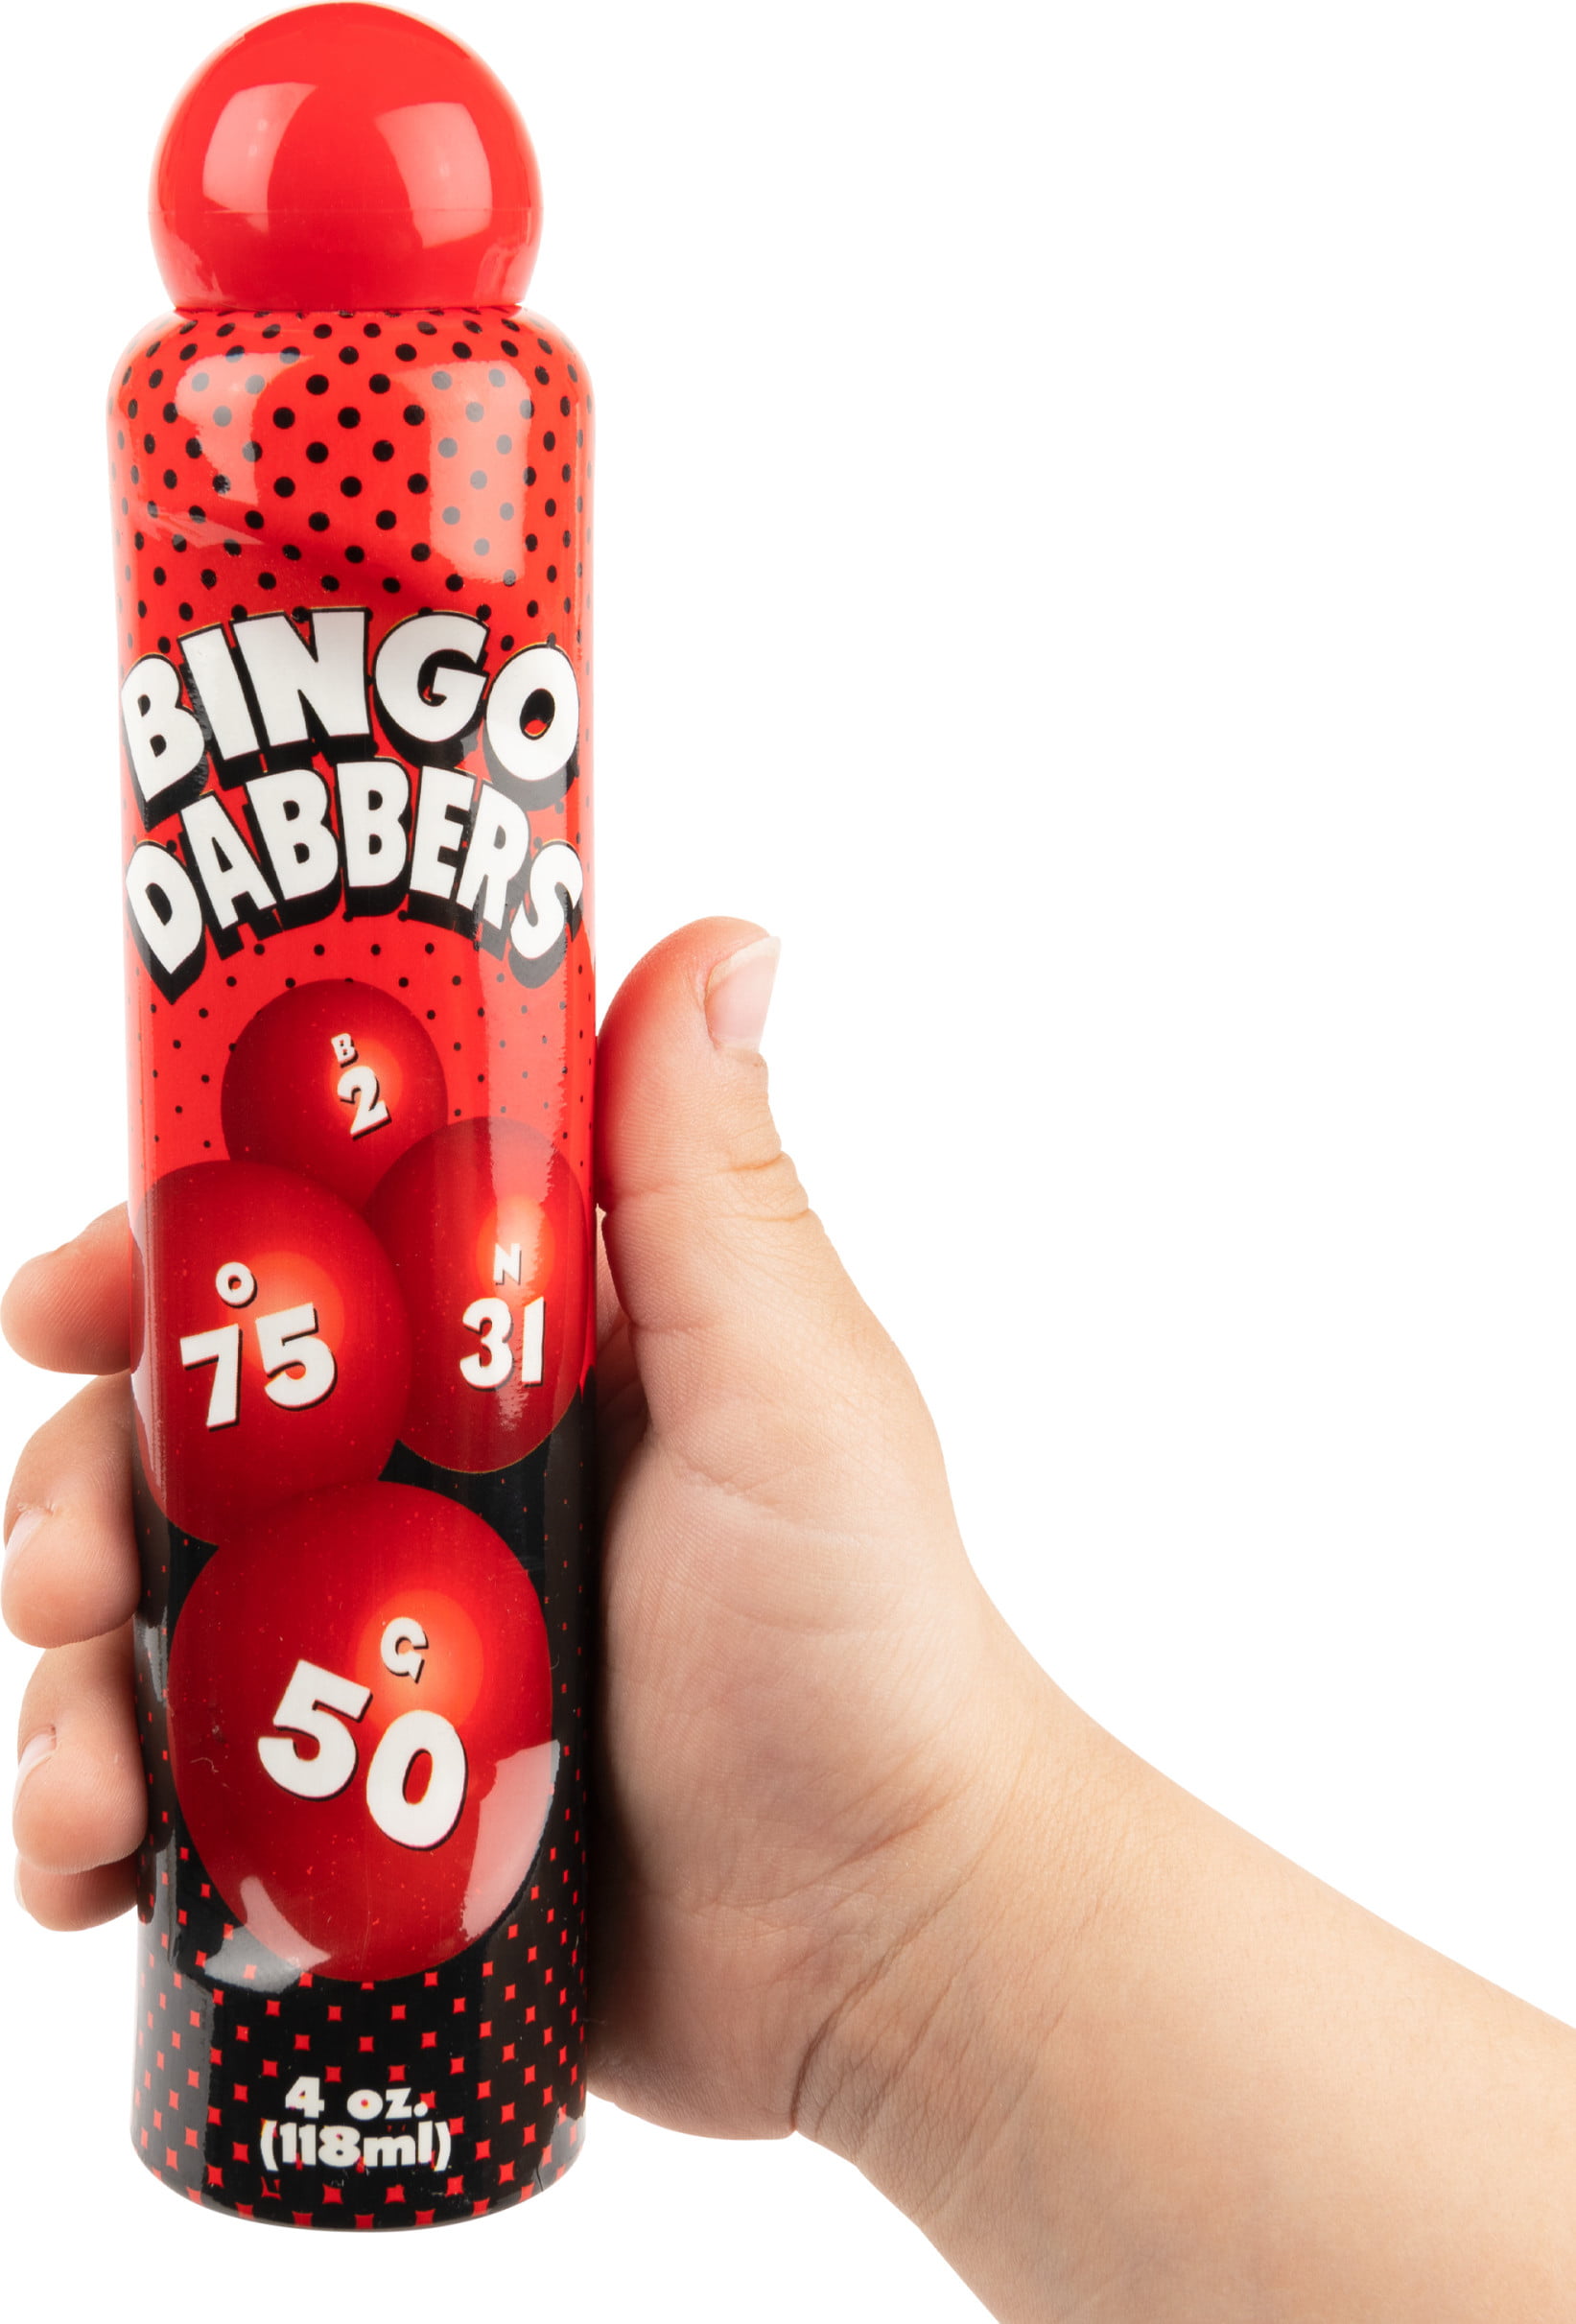 Single Bright Big Fun Games Coloured Tickets Tallon Large Red Bingo Dabber 